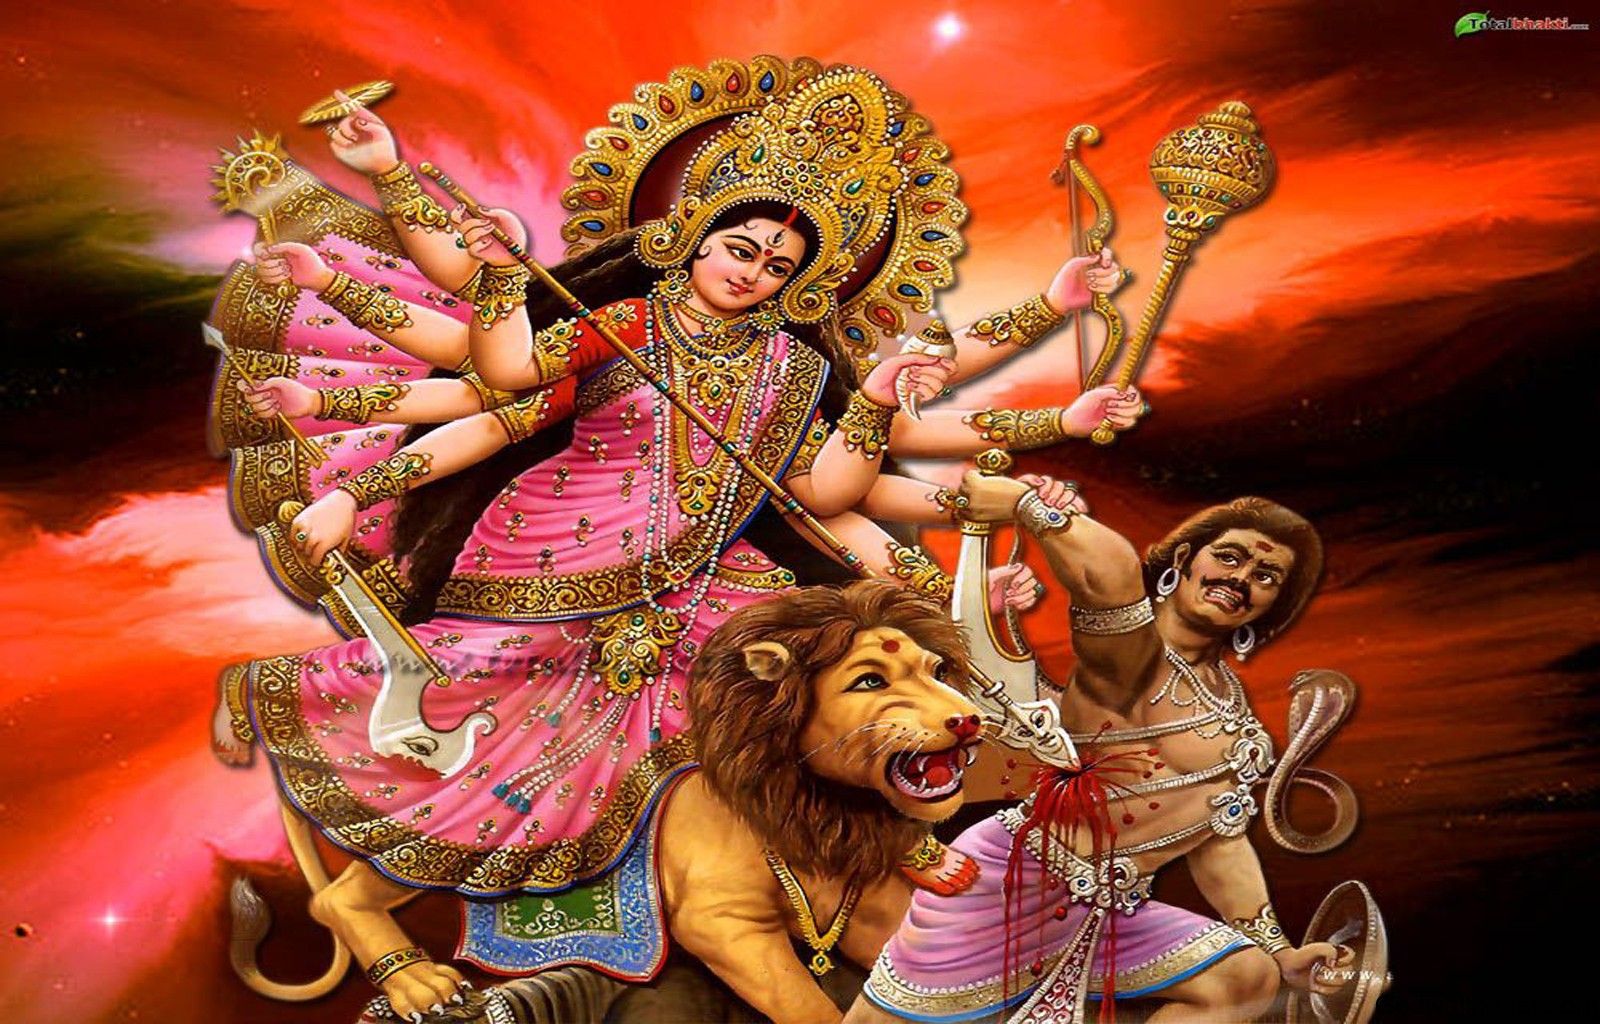 Wallpapers Hindu God 1600x1024 | #459352 #hindu god